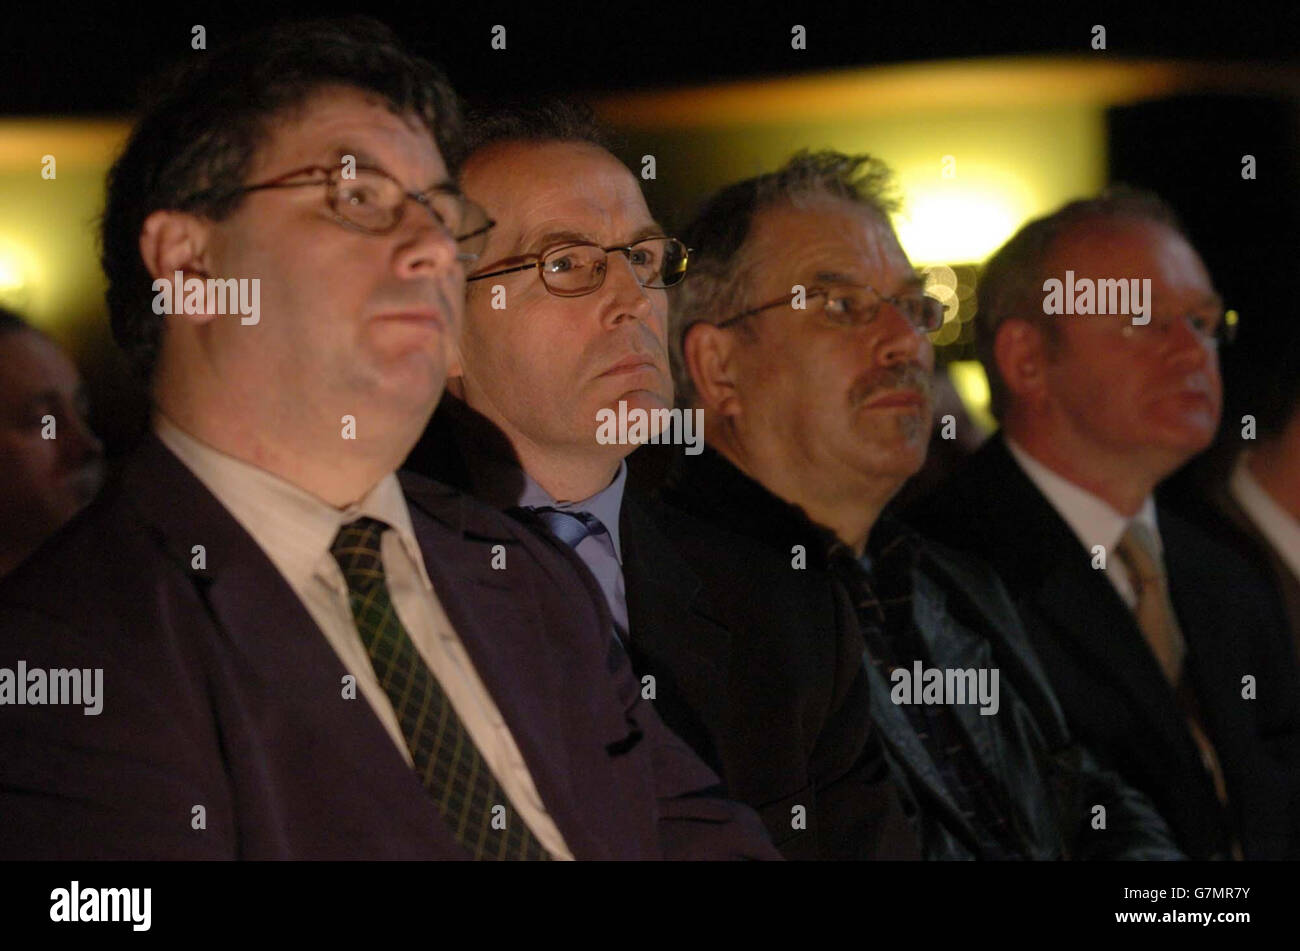 Joe Reilly, Sinn Fein candidate for Meath by-election (left to right), Gerry Kelly, MLA Sinn Fein, Robert Ballagh, artist, and Martin McGuiness, deputy leader of Sinn Fein. Stock Photo